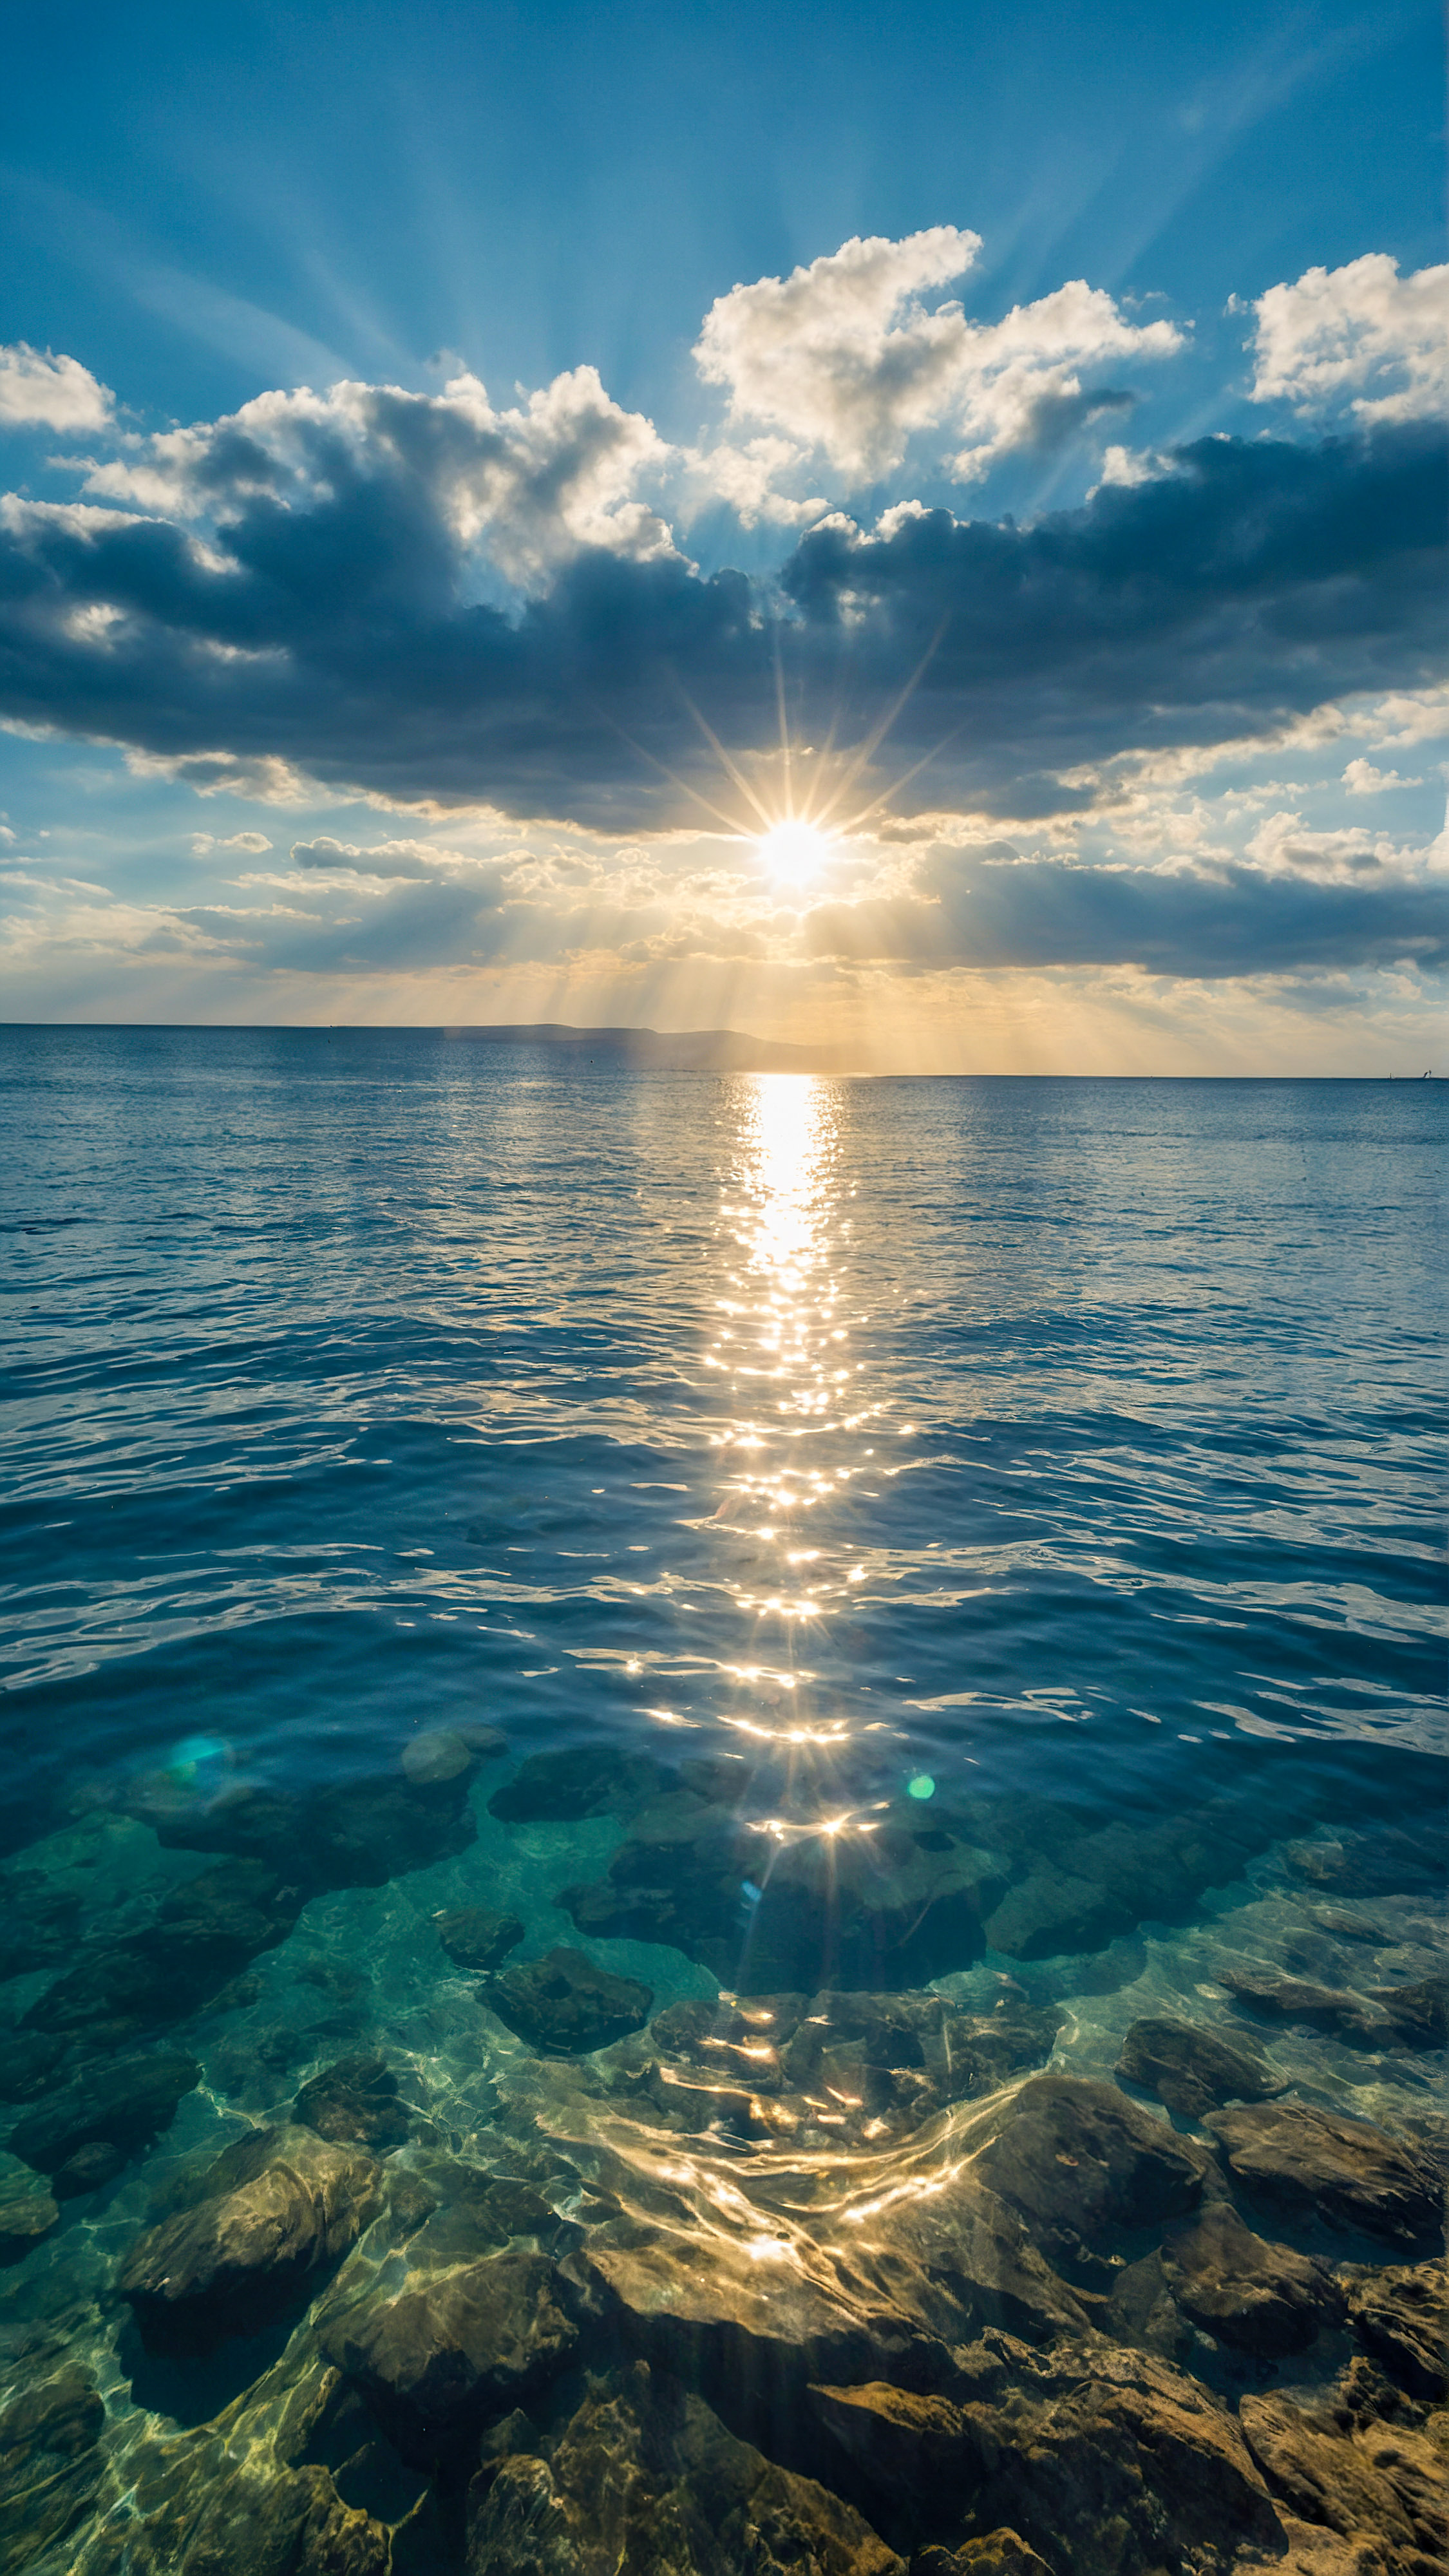 Goûtez à la tranquillité avec notre arrière-plan nature en 4K pour iPhone, présentant un paysage marin serein et magnifique avec des cieux bleus clairs et des eaux calmes reflétant la lumière du soleil, transformant votre écran en une fenêtre sur la sérénité de la nature. 